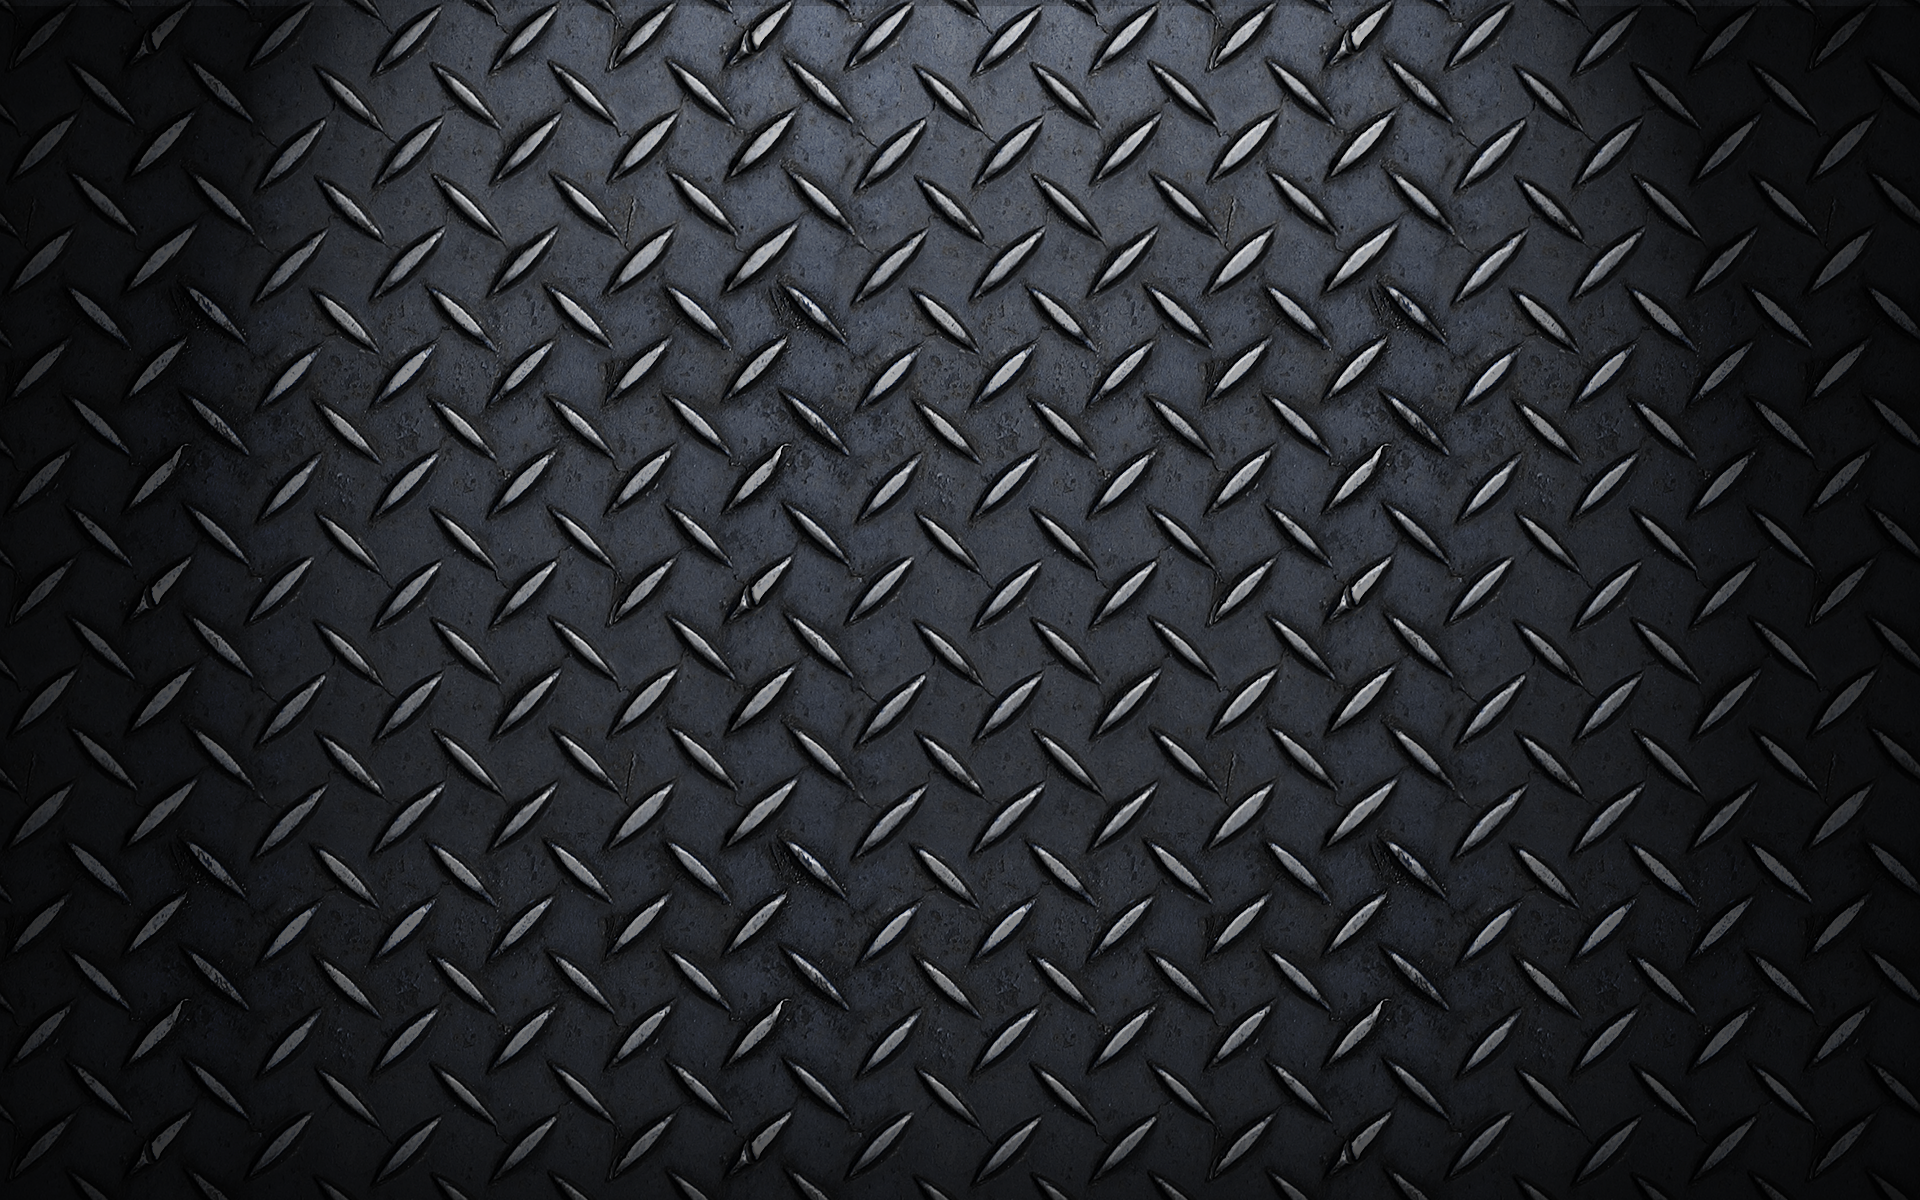  47 Cool Black  Wallpapers  Full  Screen  on WallpaperSafari